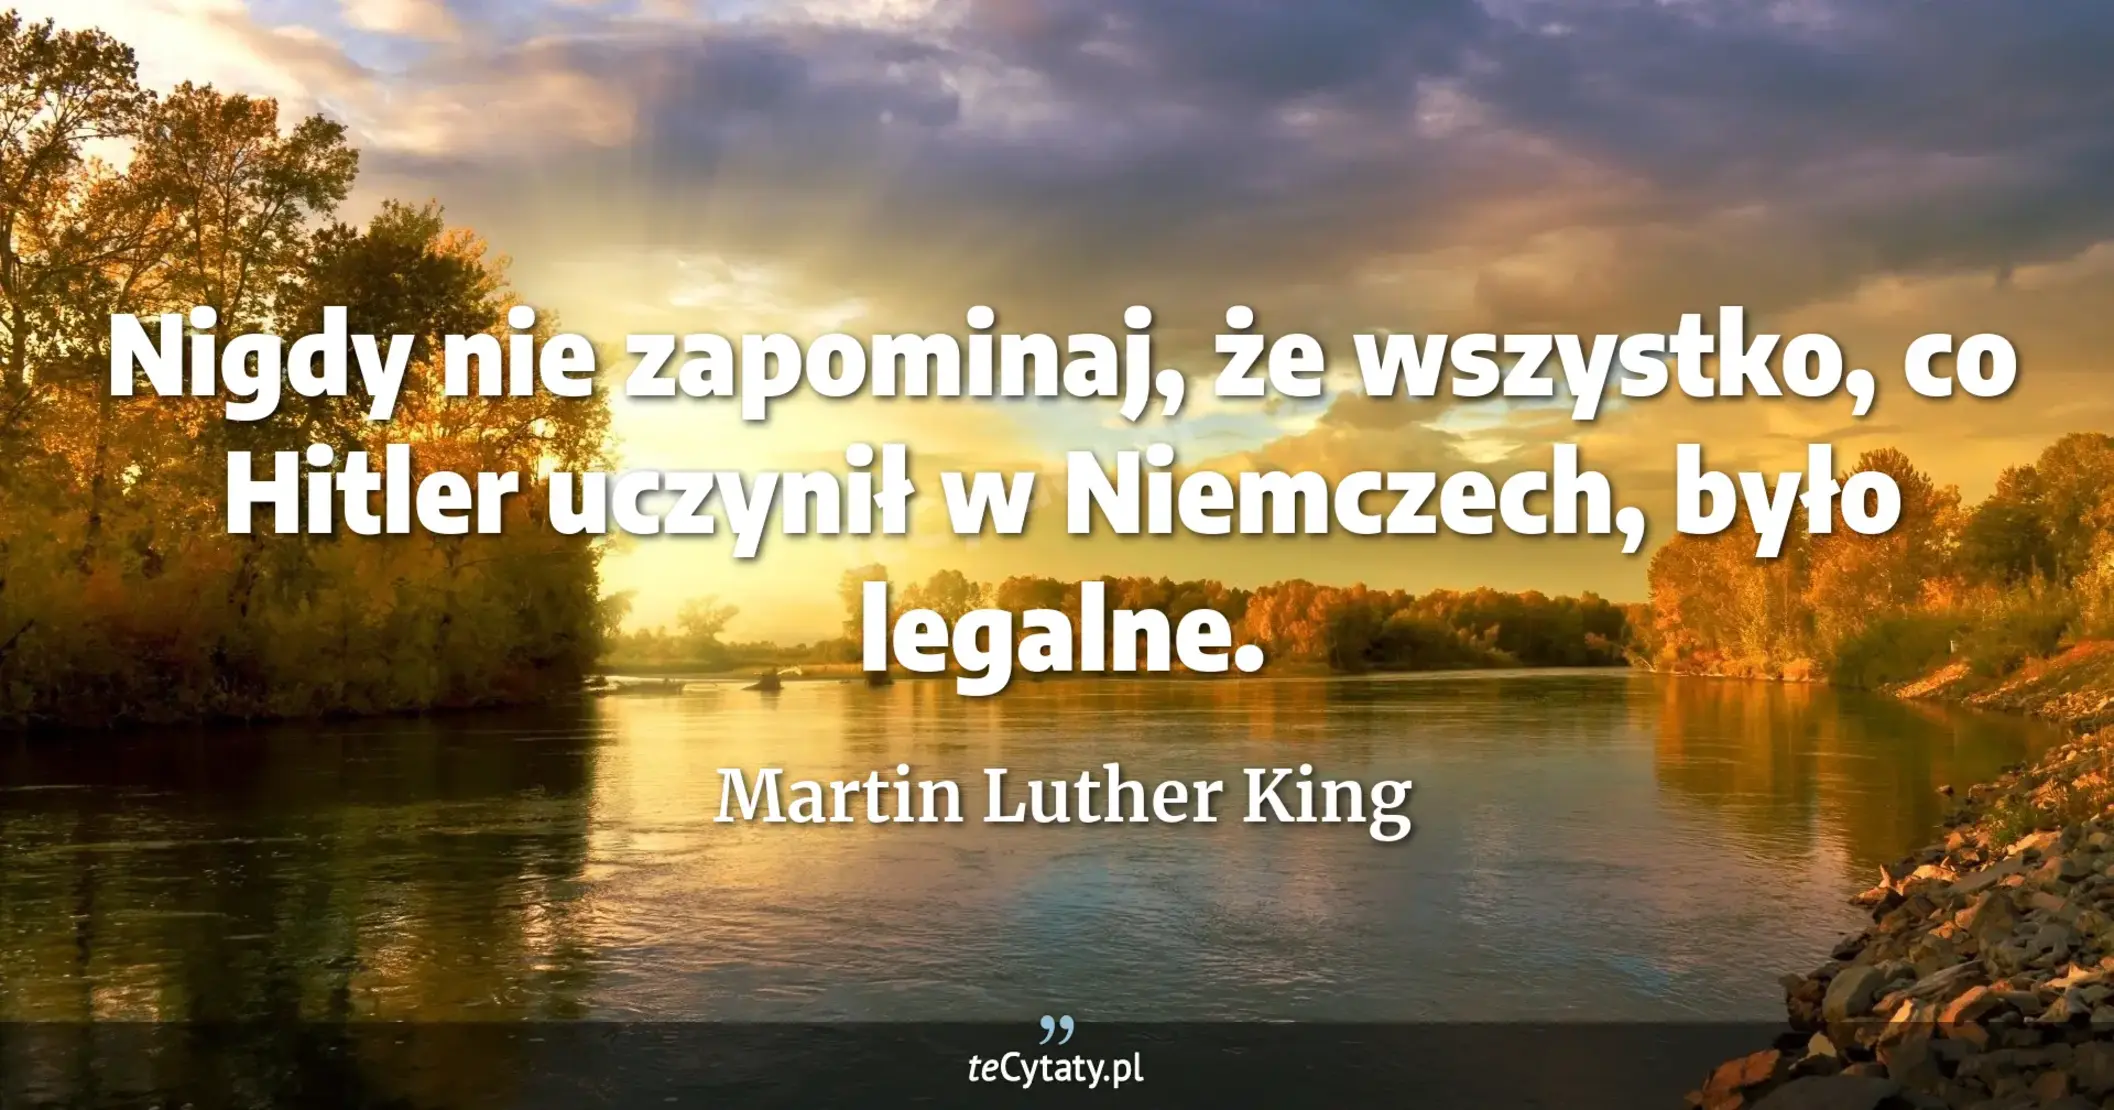 Nigdy nie zapominaj, że wszystko, co Hitler uczynił w Niemczech, było legalne. - Martin Luther King